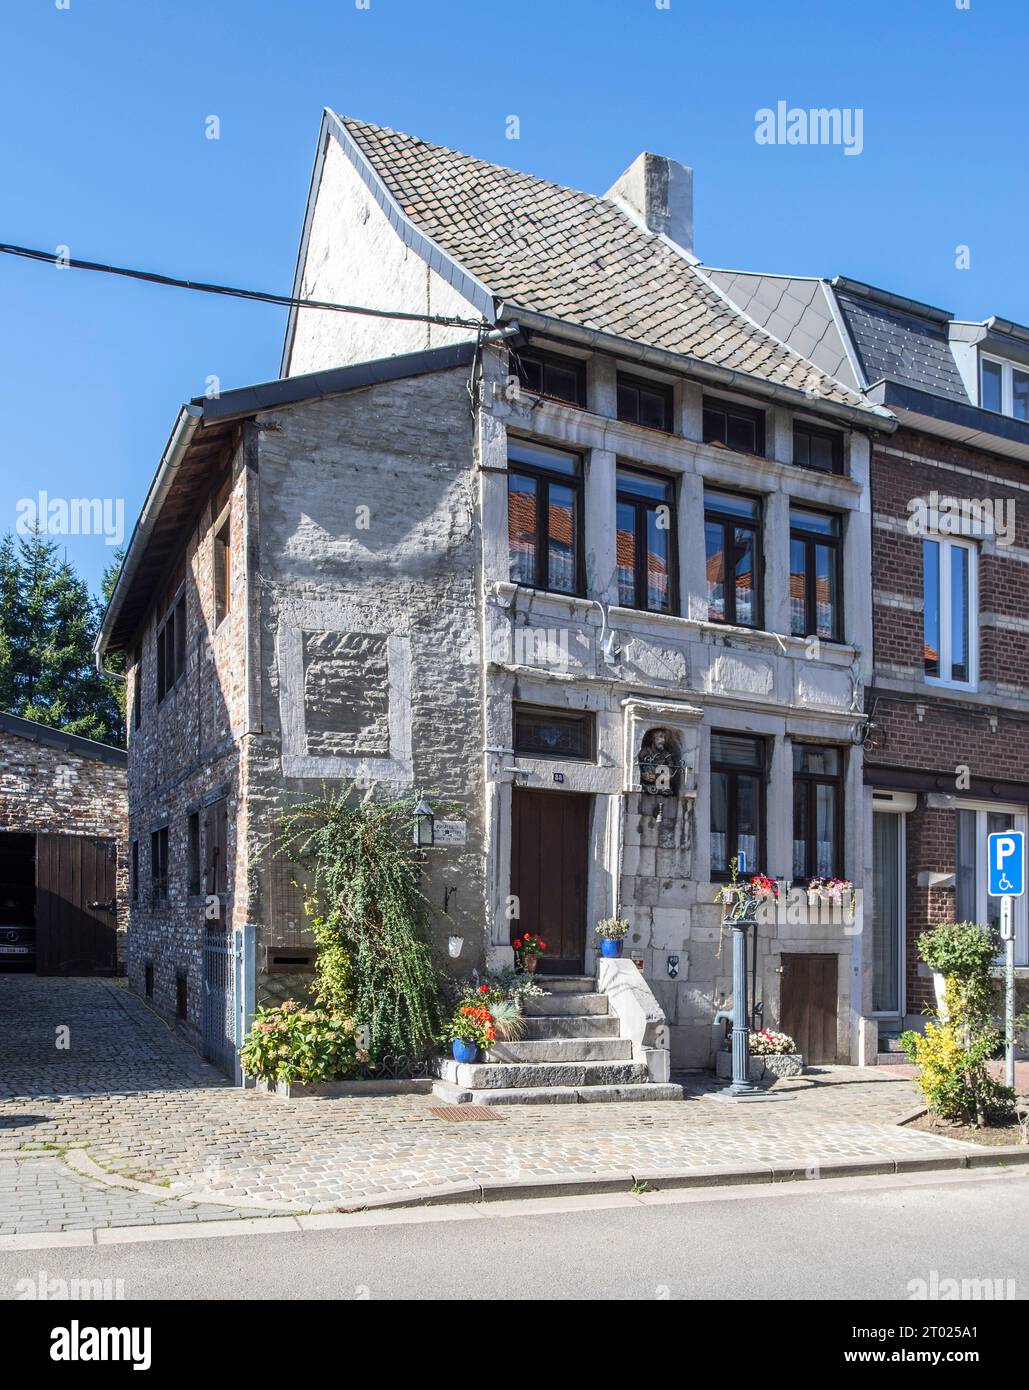 Maison du Père éternel / Maison du Vi Bon Dju, 18th century house in the historic city centre of Herve in the province of Liège, Wallonia, Belgium Stock Photo